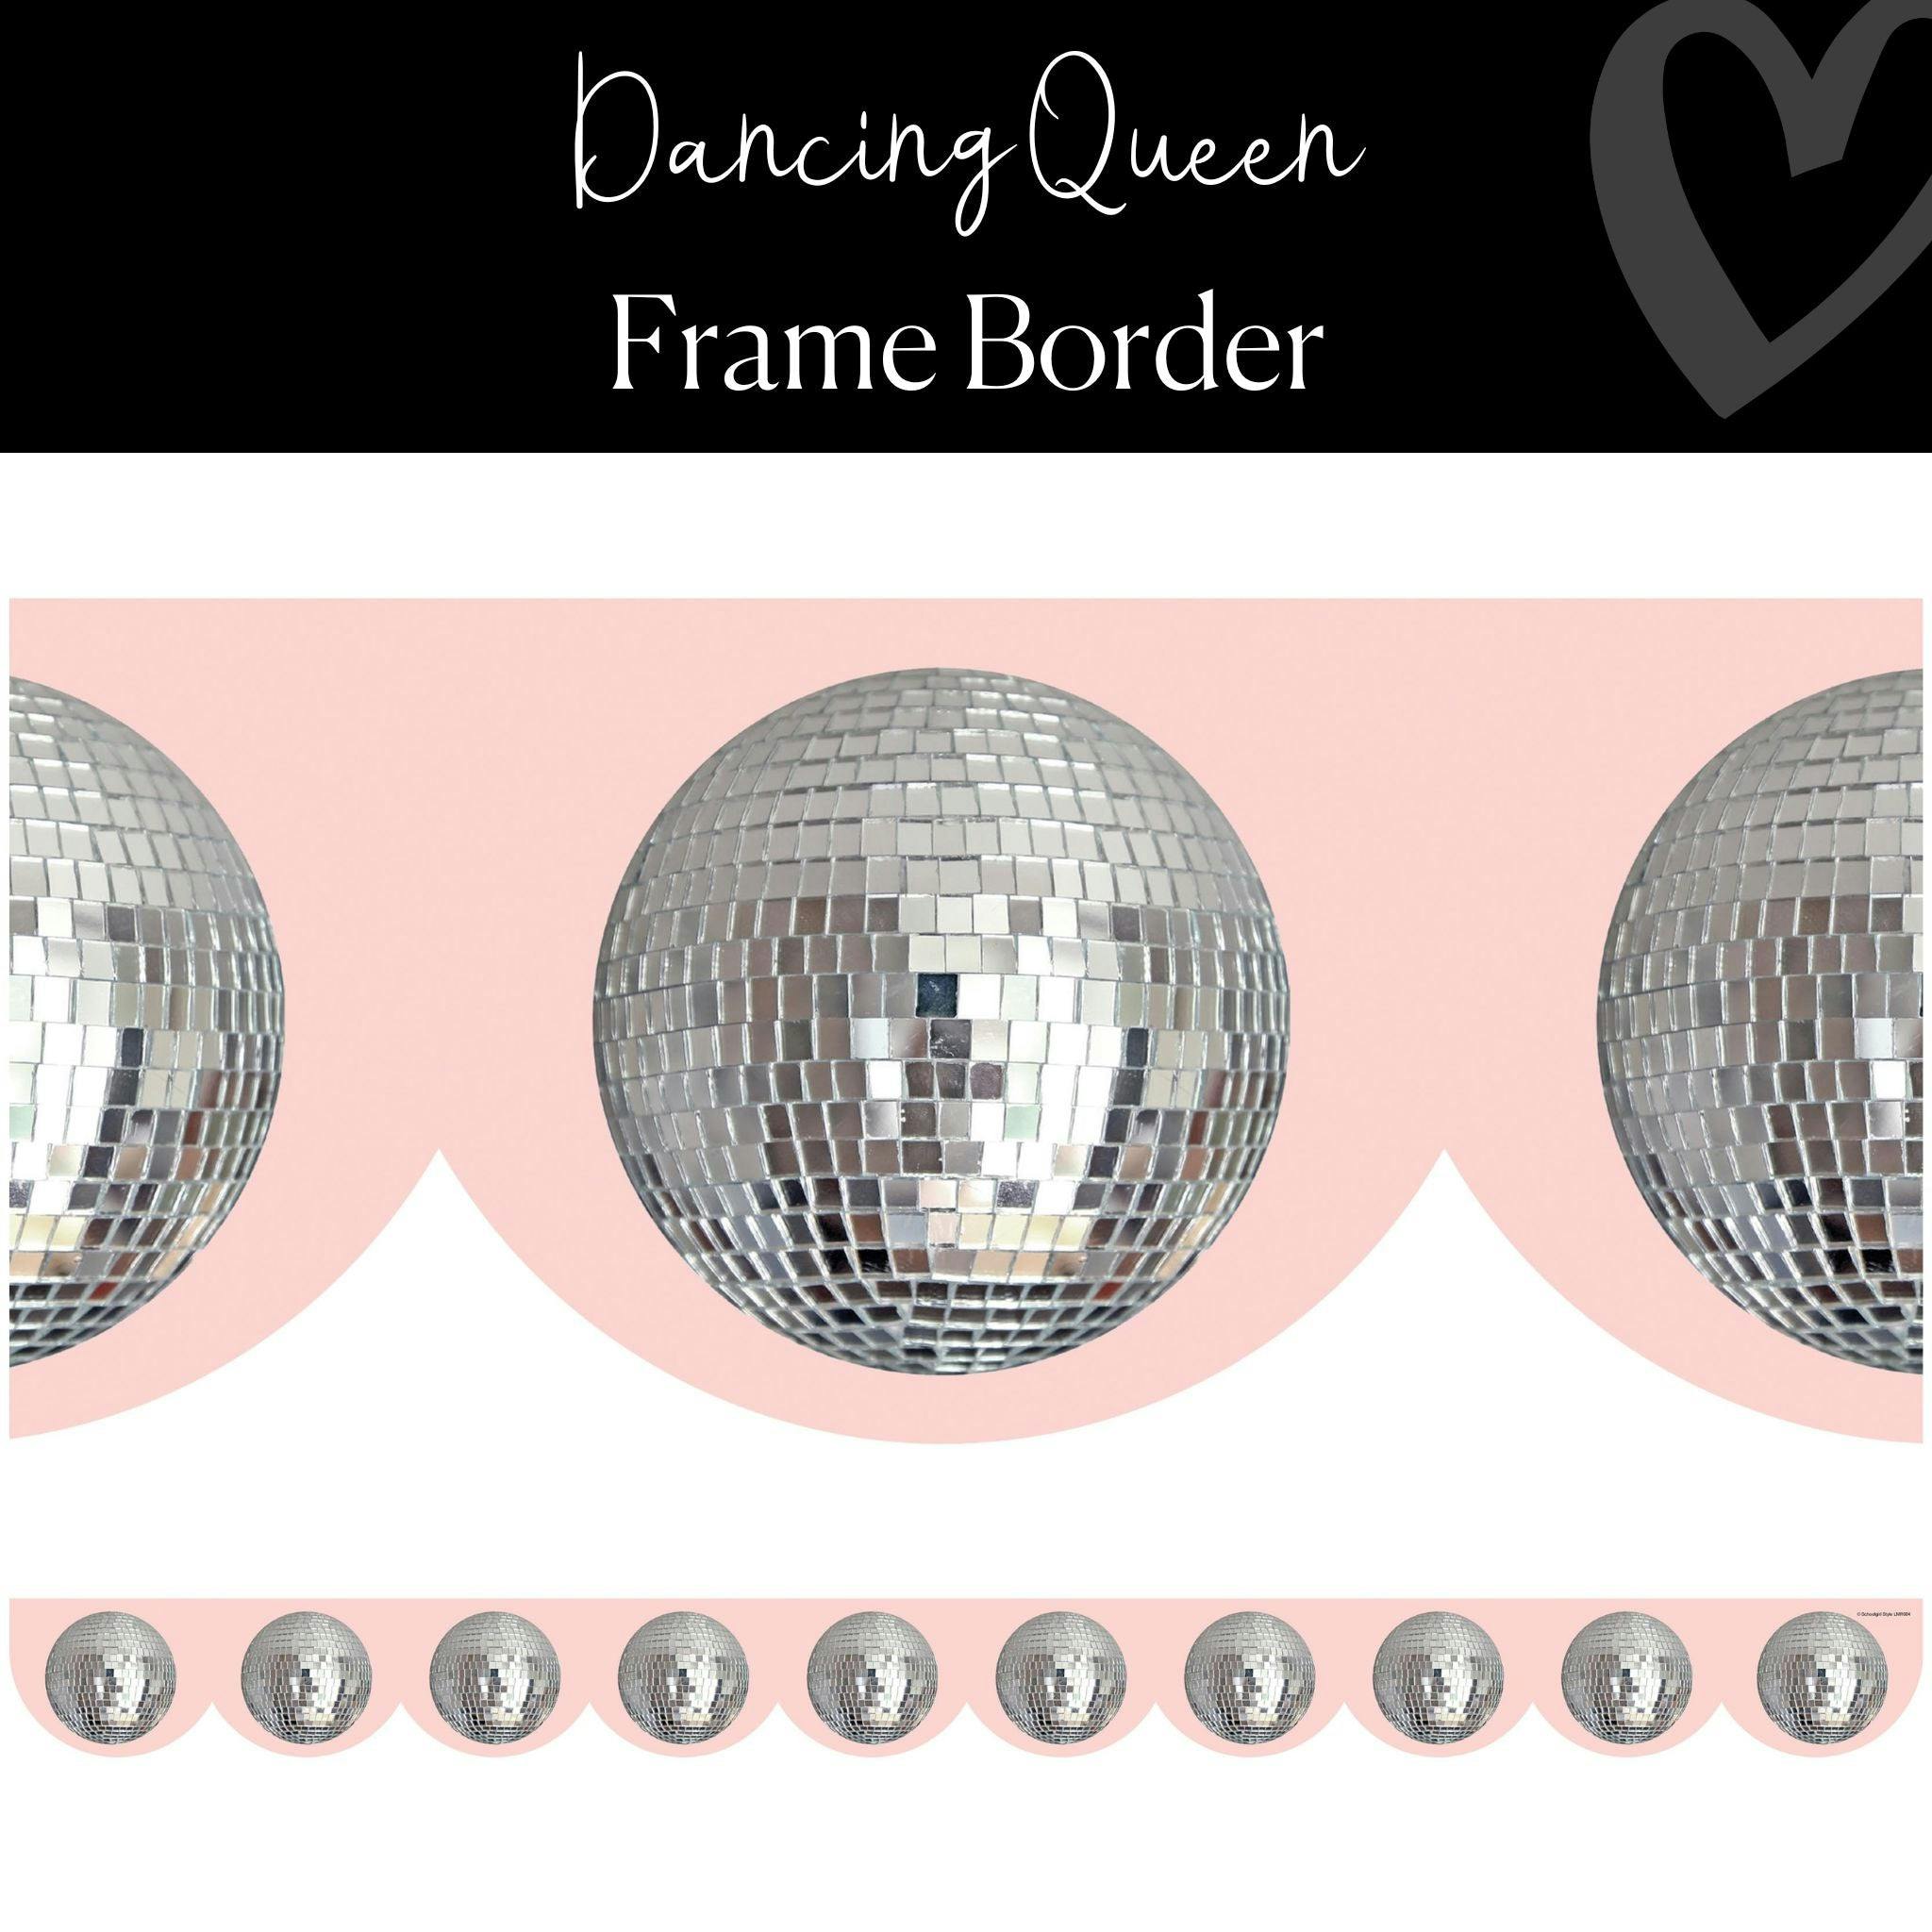 Retro Classroom Decor | Disco Ball Scallop Border | "Dancing Queen" Frame Border | Schoolgirl Style